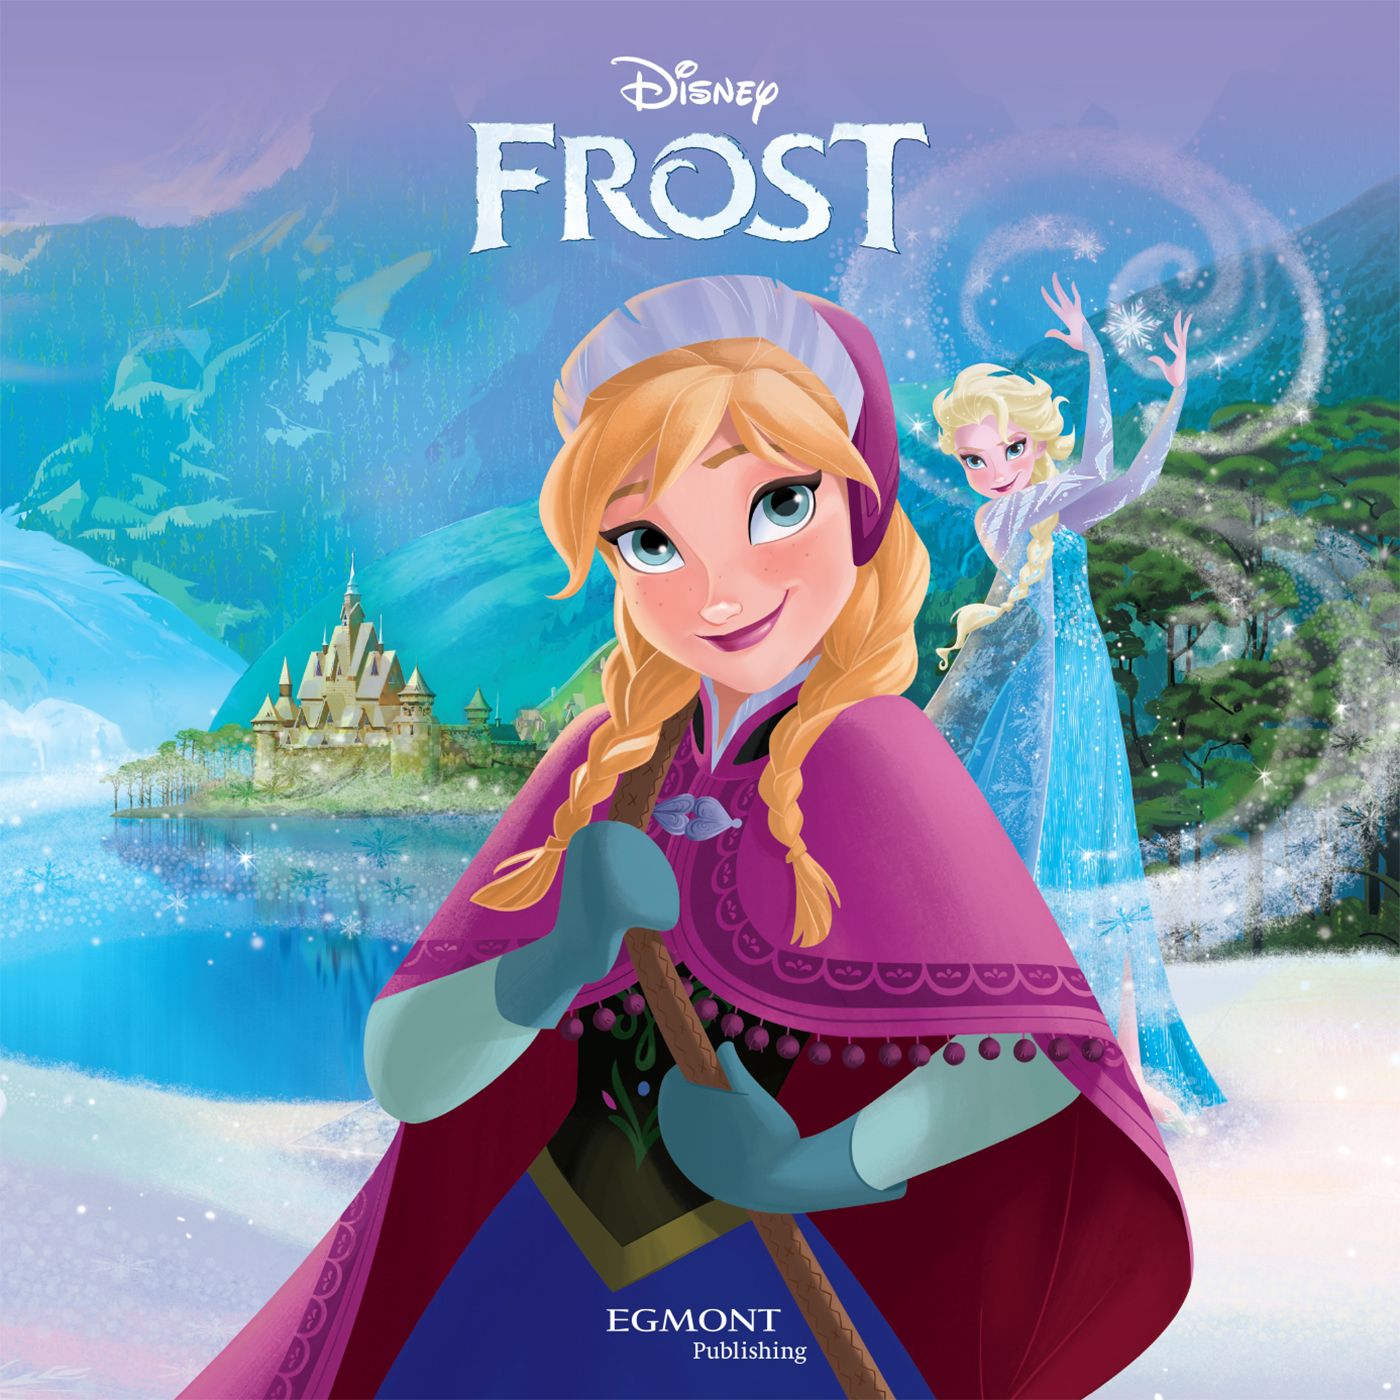 Frost, ljudbok av Disney